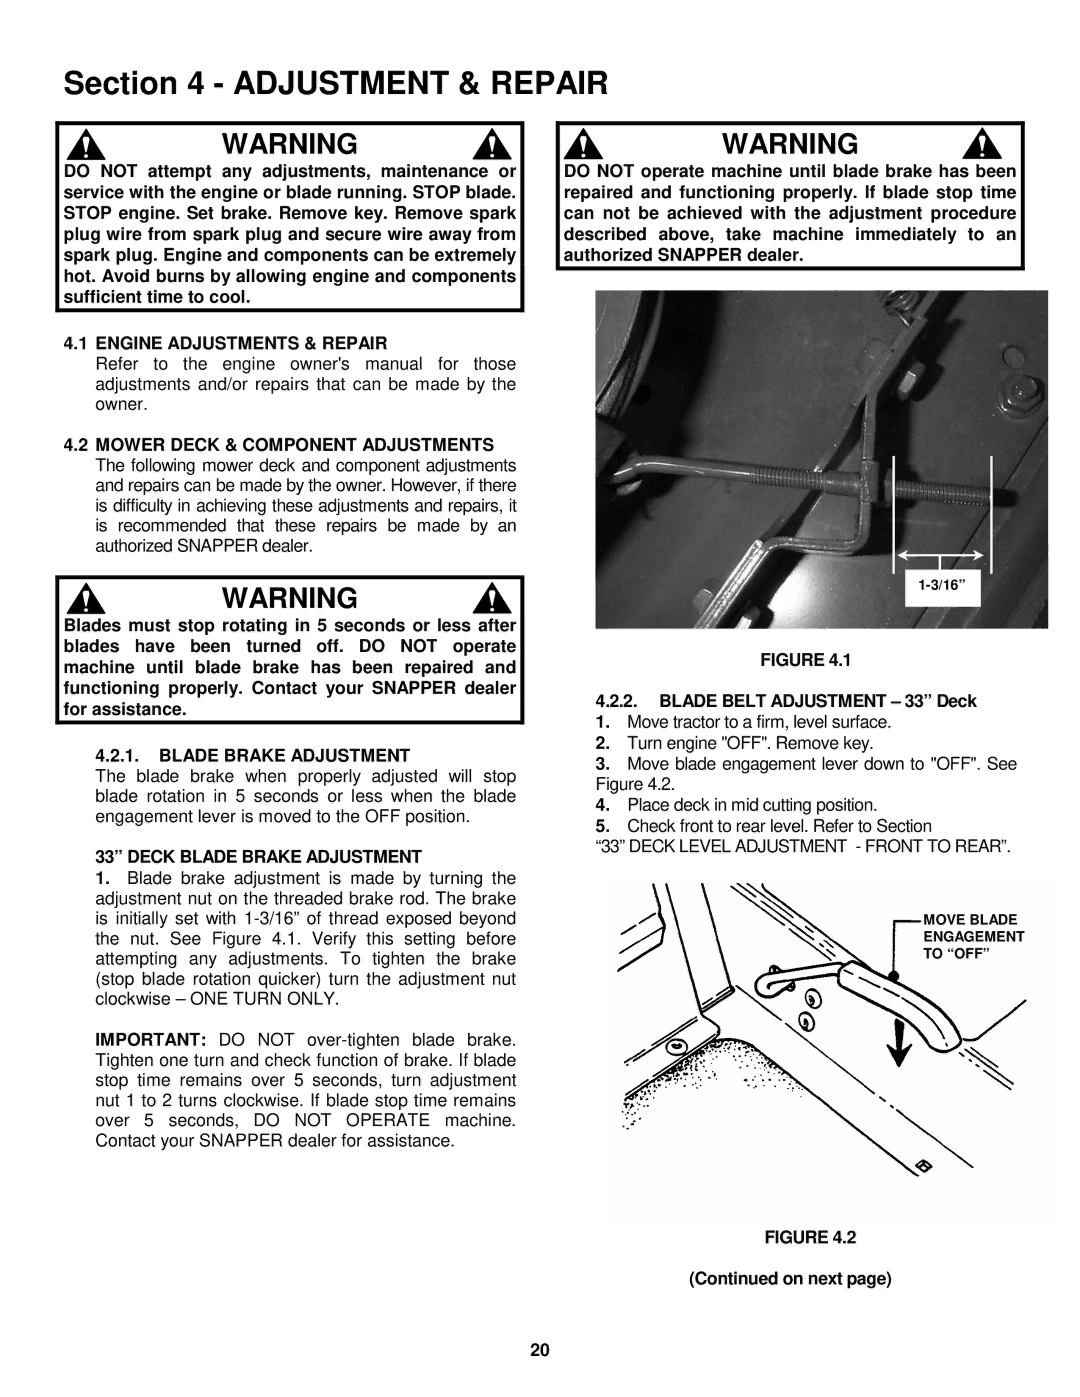 Snapper ELT150H33IBV important safety instructions Engine Adjustments & Repair, Deck Blade Brake Adjustment, On next 